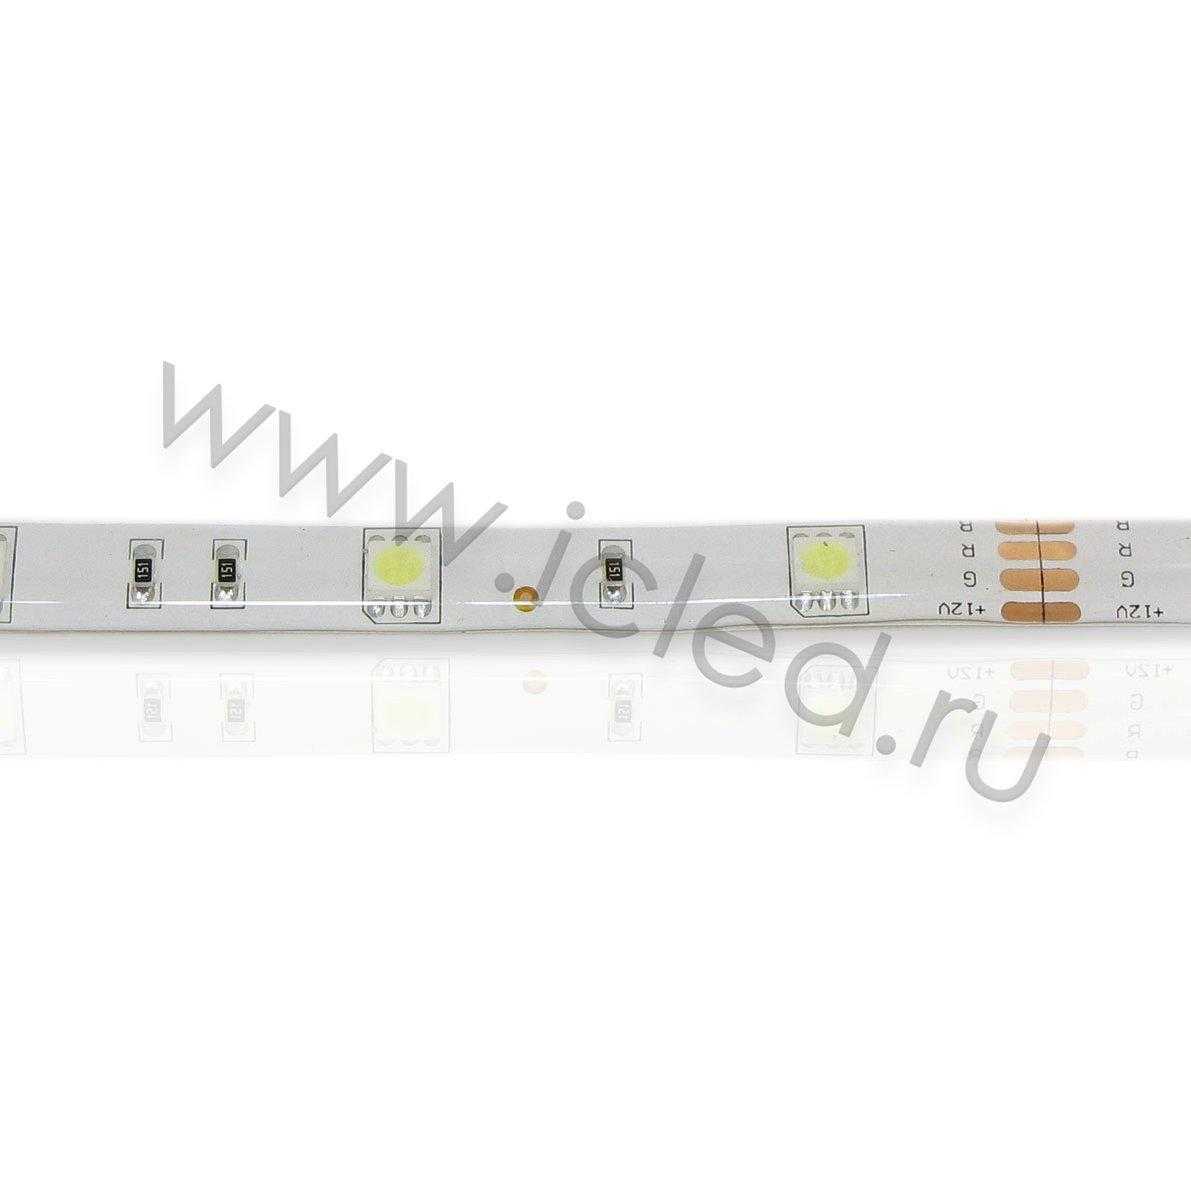 Влагозащищенные светодиодные ленты Светодиодная лента Standart class 5050, 30led/m, White, 12V, IP65 Icled